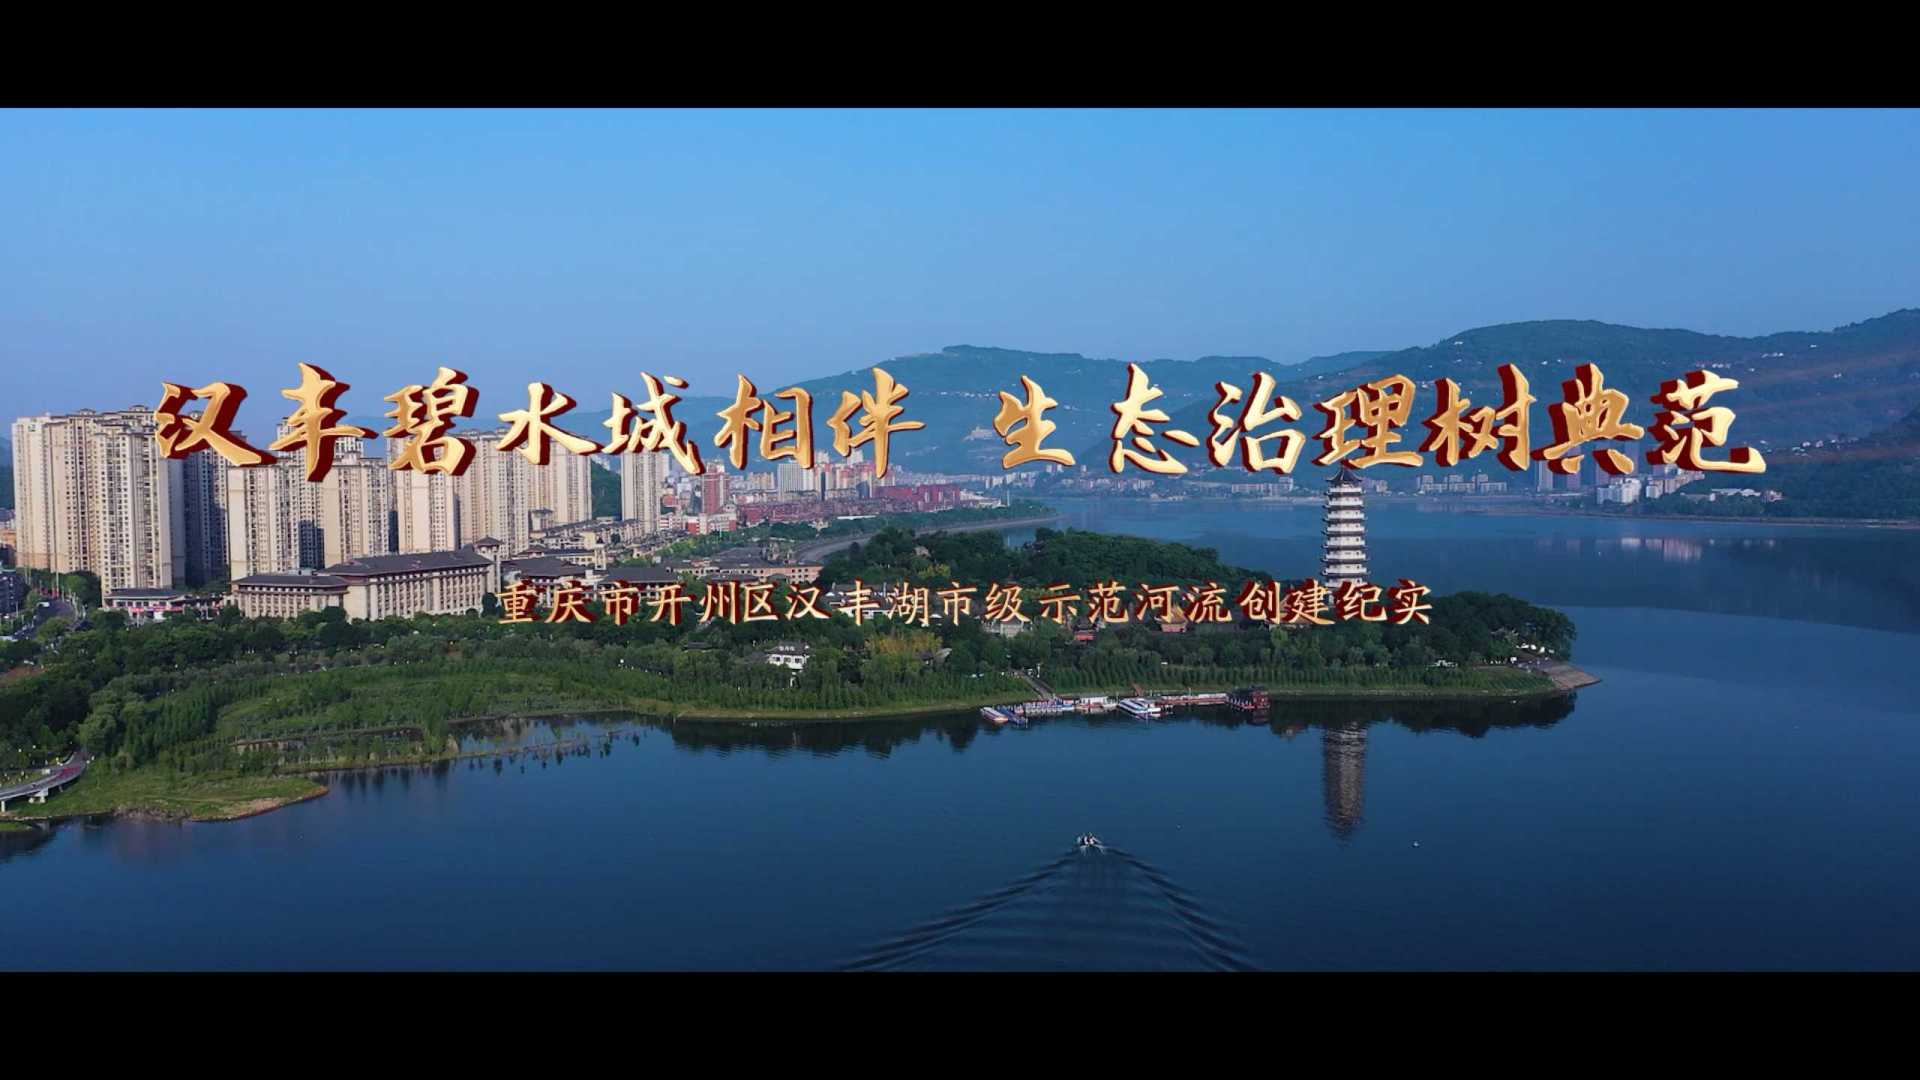 汉丰碧水城相伴   生态治理树典范--重庆市开州区汉丰湖市级示范河流创建纪实